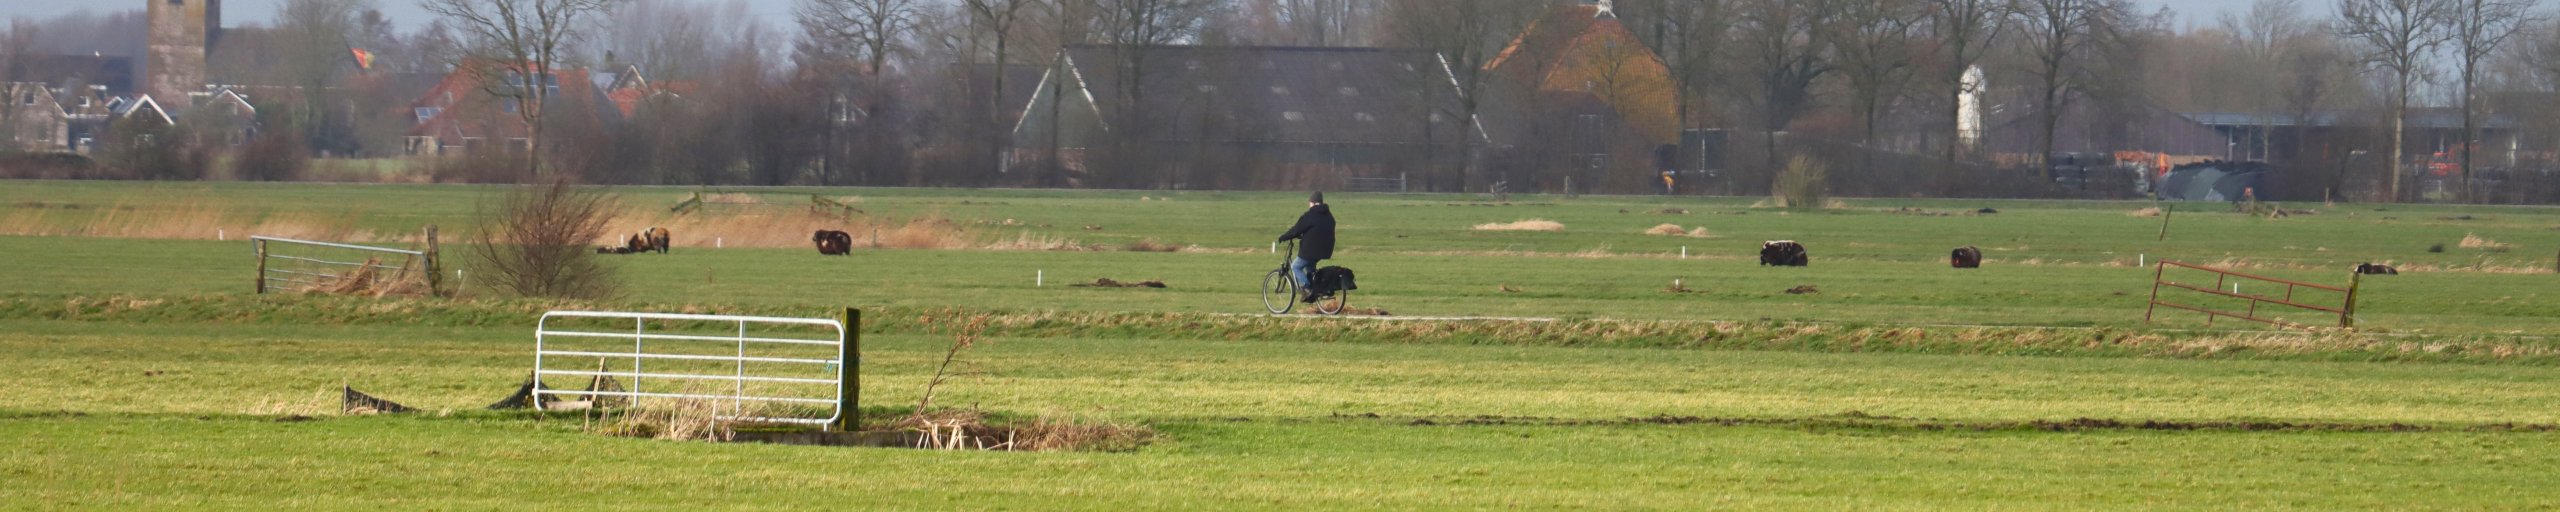 Een weiland waar een eenzame fietser doorheen fietst en op de achtergrond een boerderij met bomen